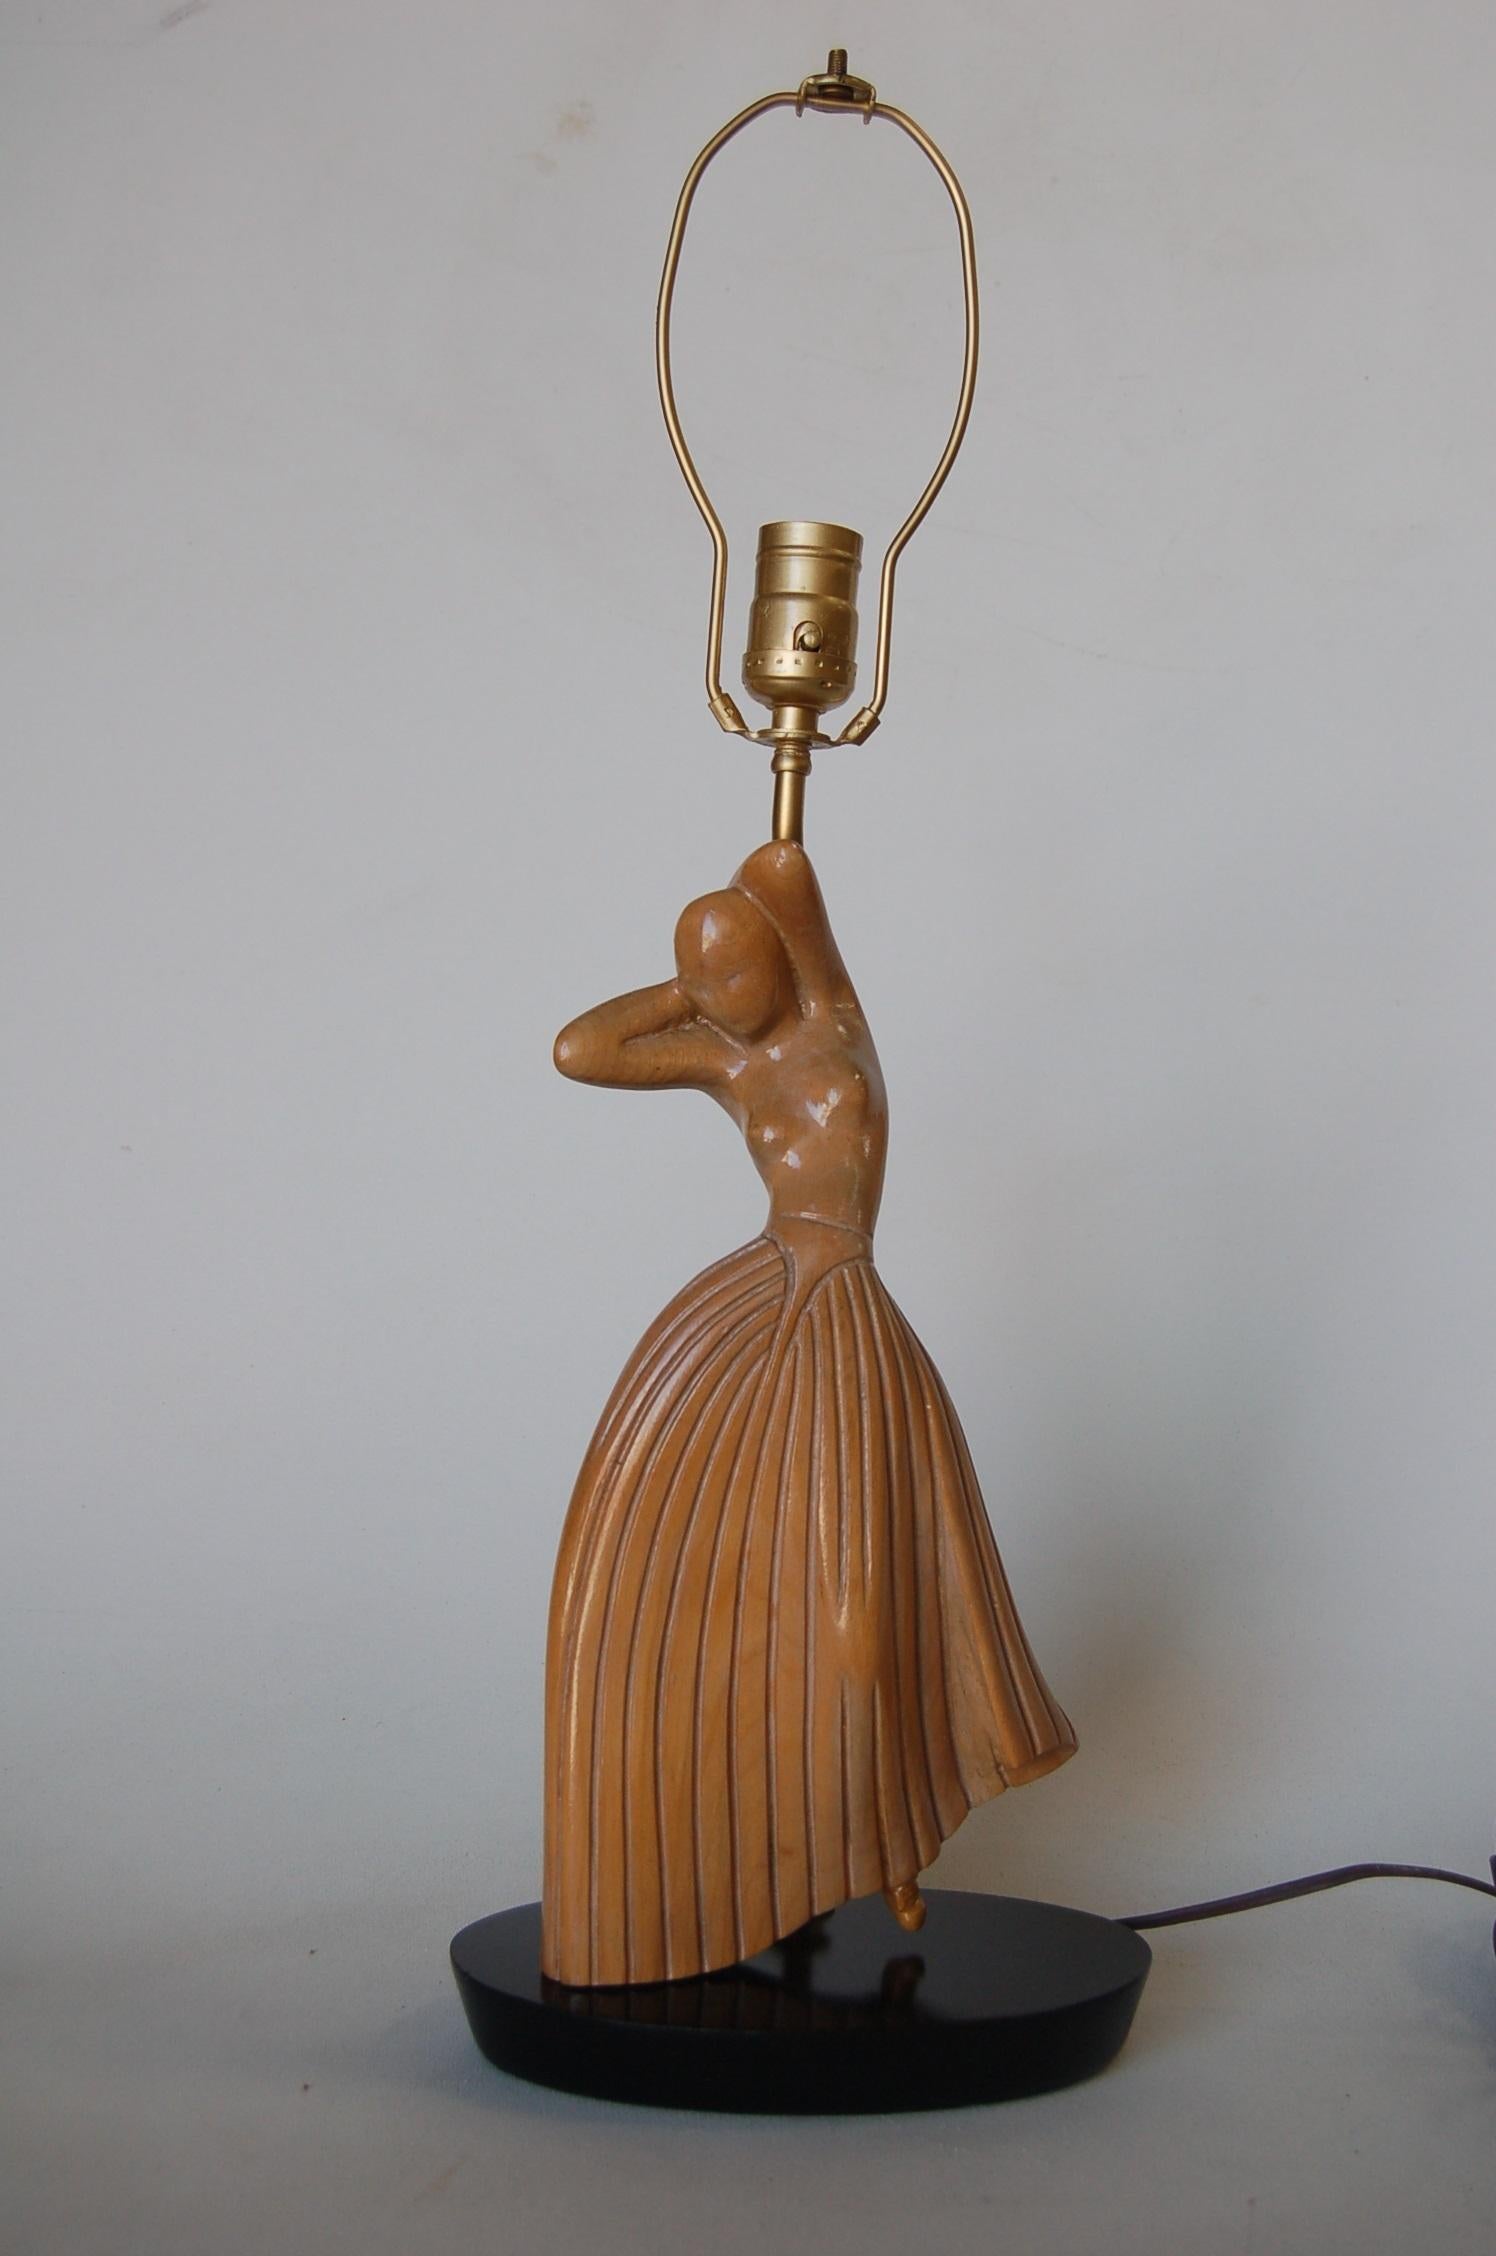 Lampe de table en chêne sculpté représentant une danseuse dans le style de Jascha Heifetz.

Dimensions : 18